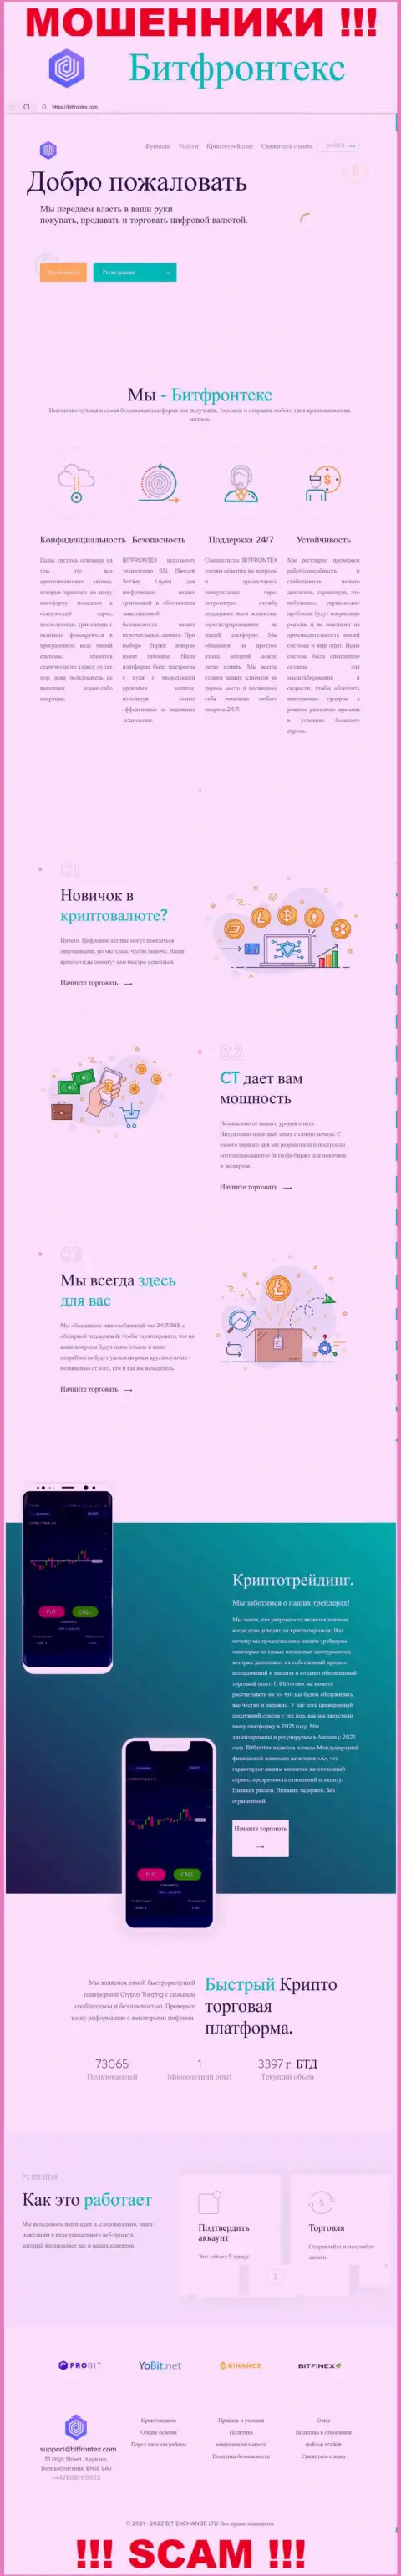 Официальная онлайн-страничка жульнического проекта Бит Фронтекс